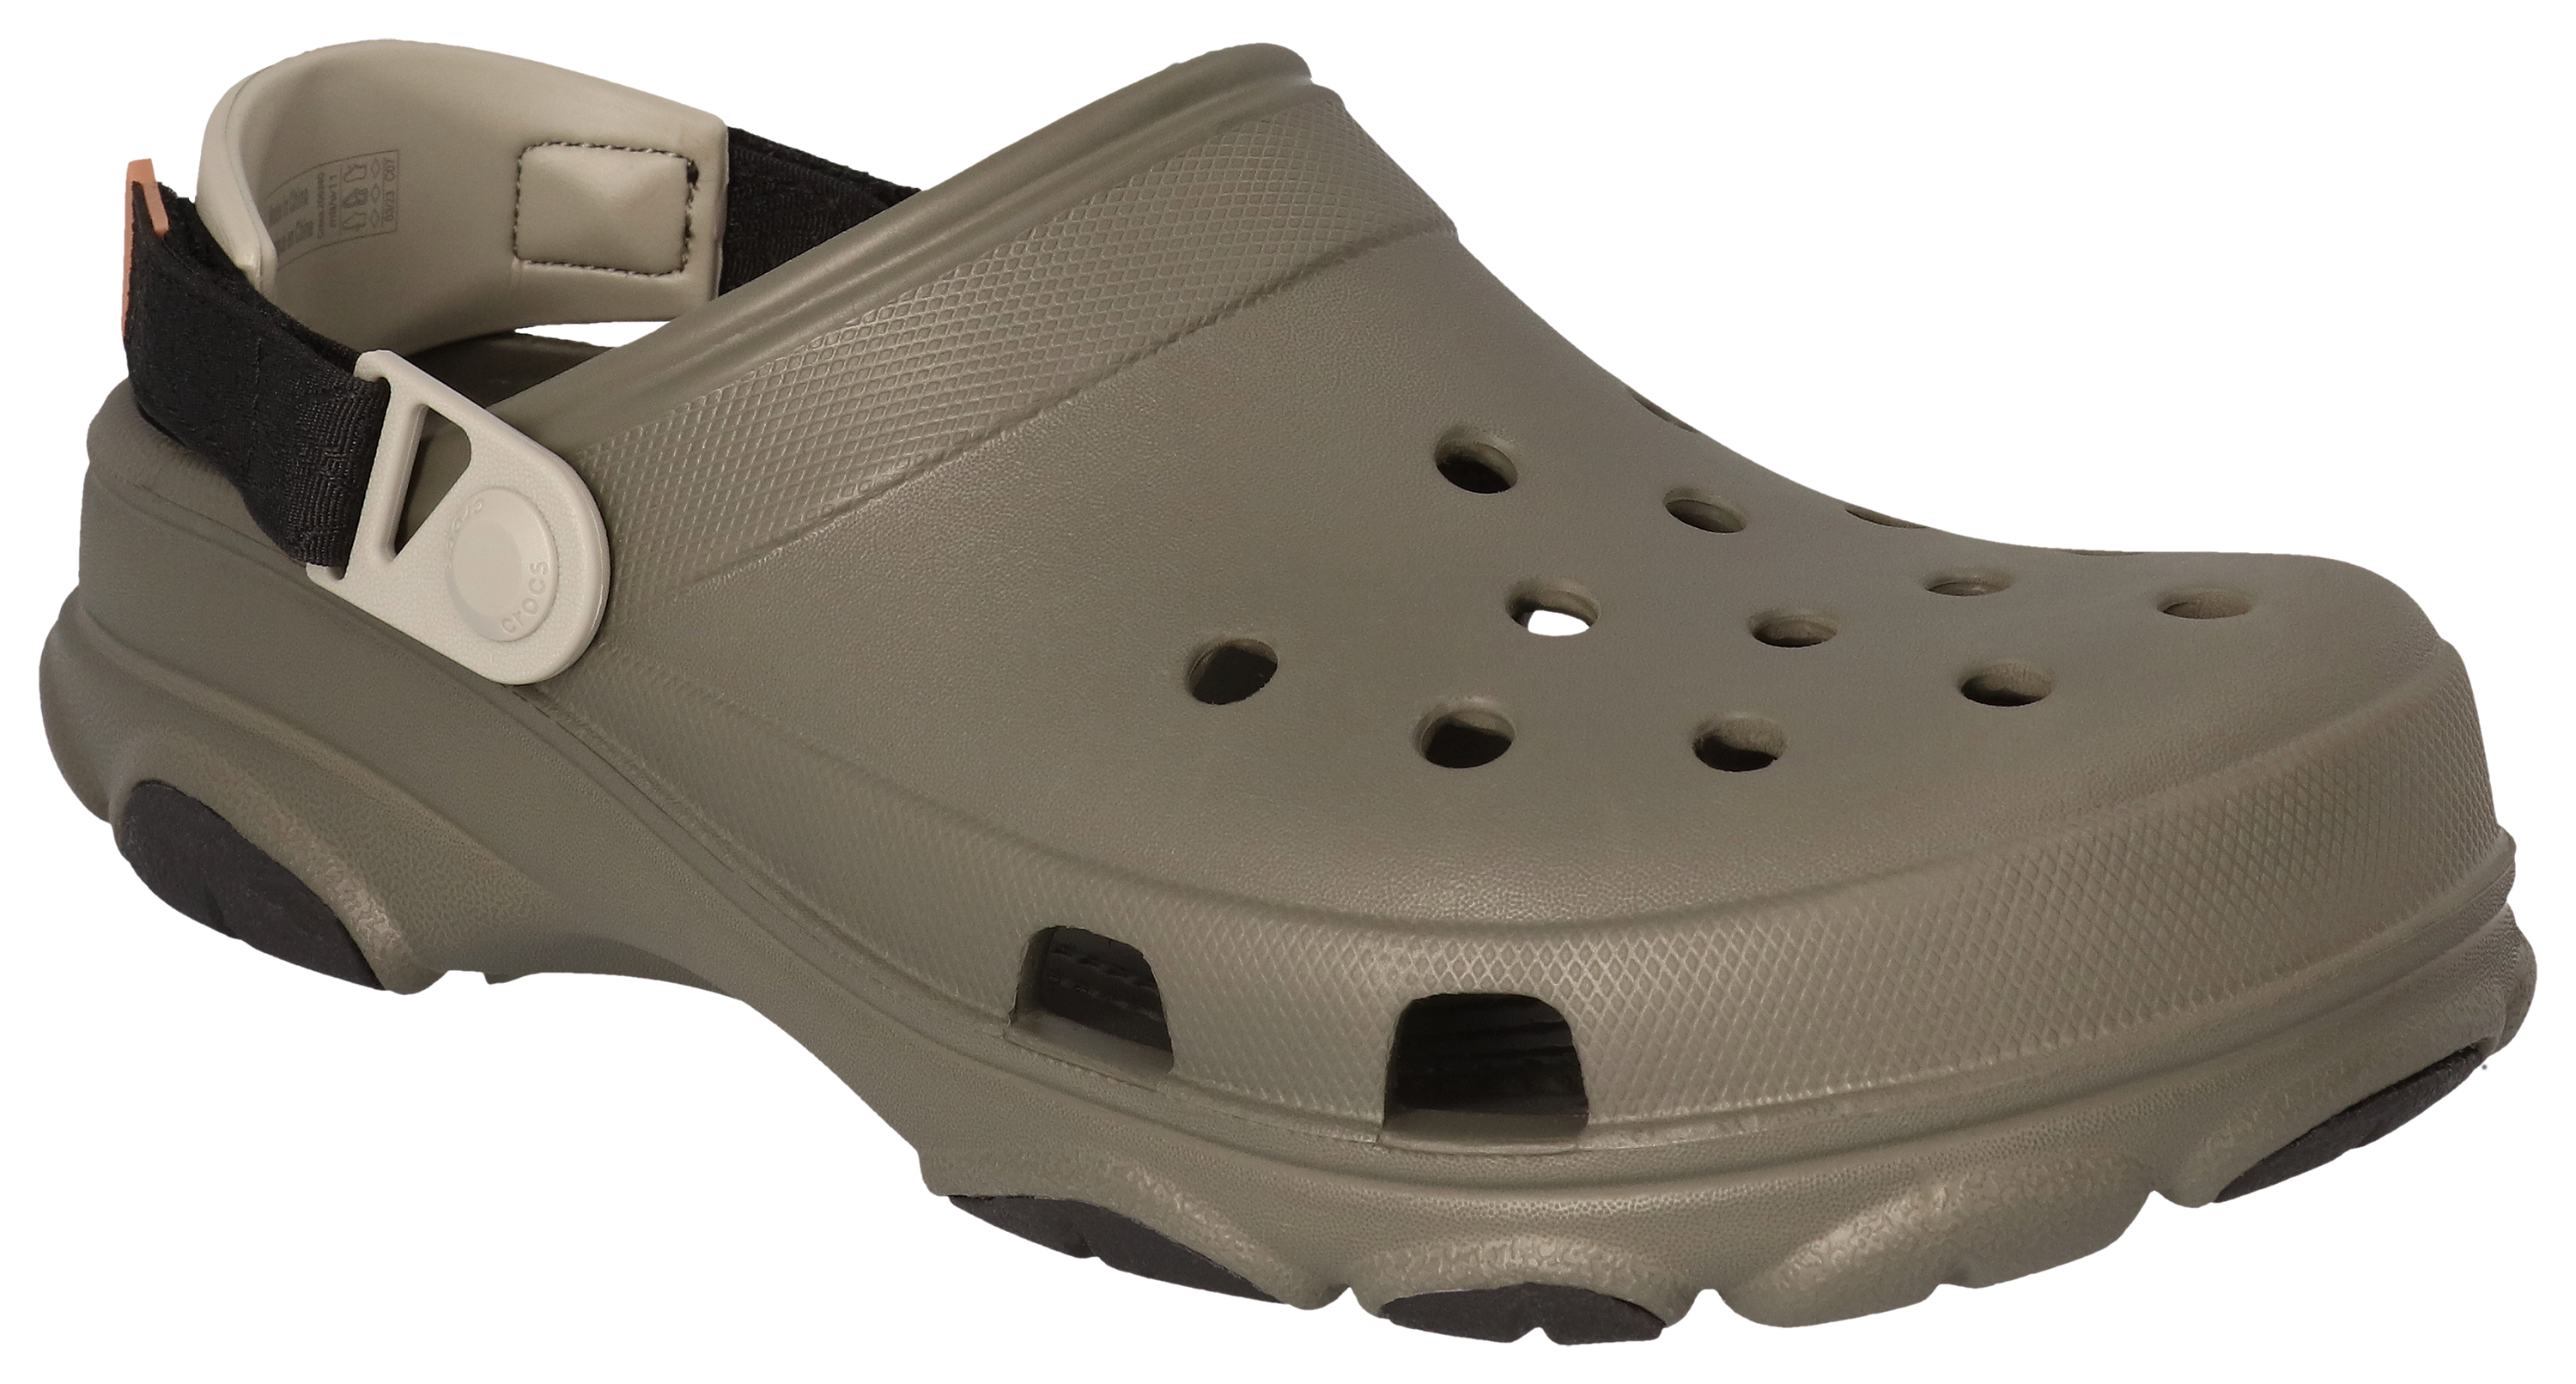 Crocs Unisex-Adult Jibbitz Shoe Charms - Letter Shoe Argentina